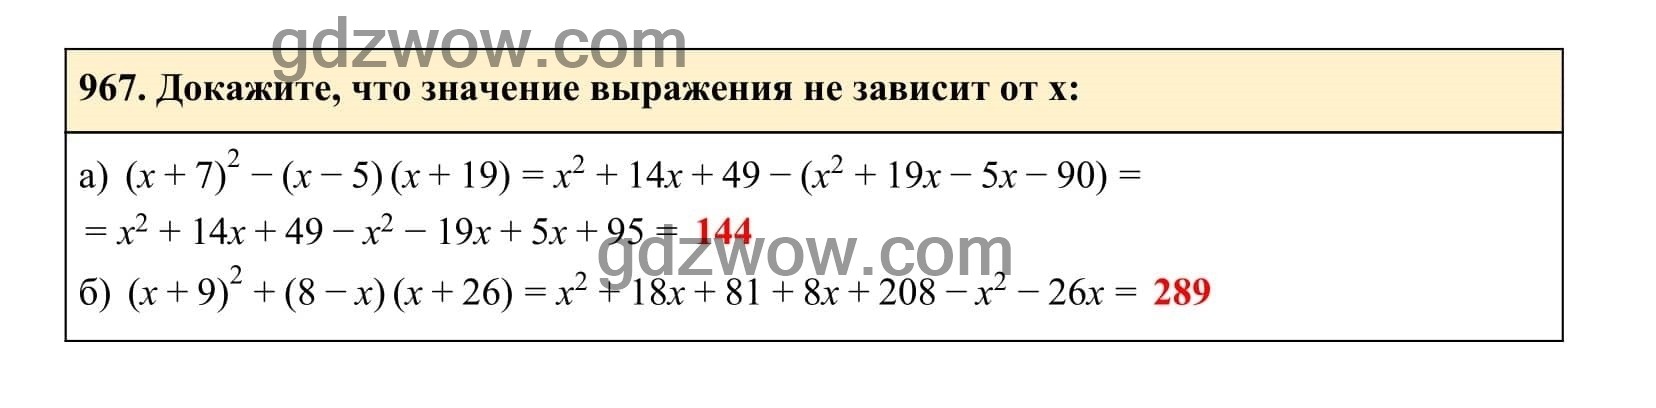 Упражнение 967 - ГДЗ по Алгебре 7 класс Учебник Макарычев (решебник) - GDZwow